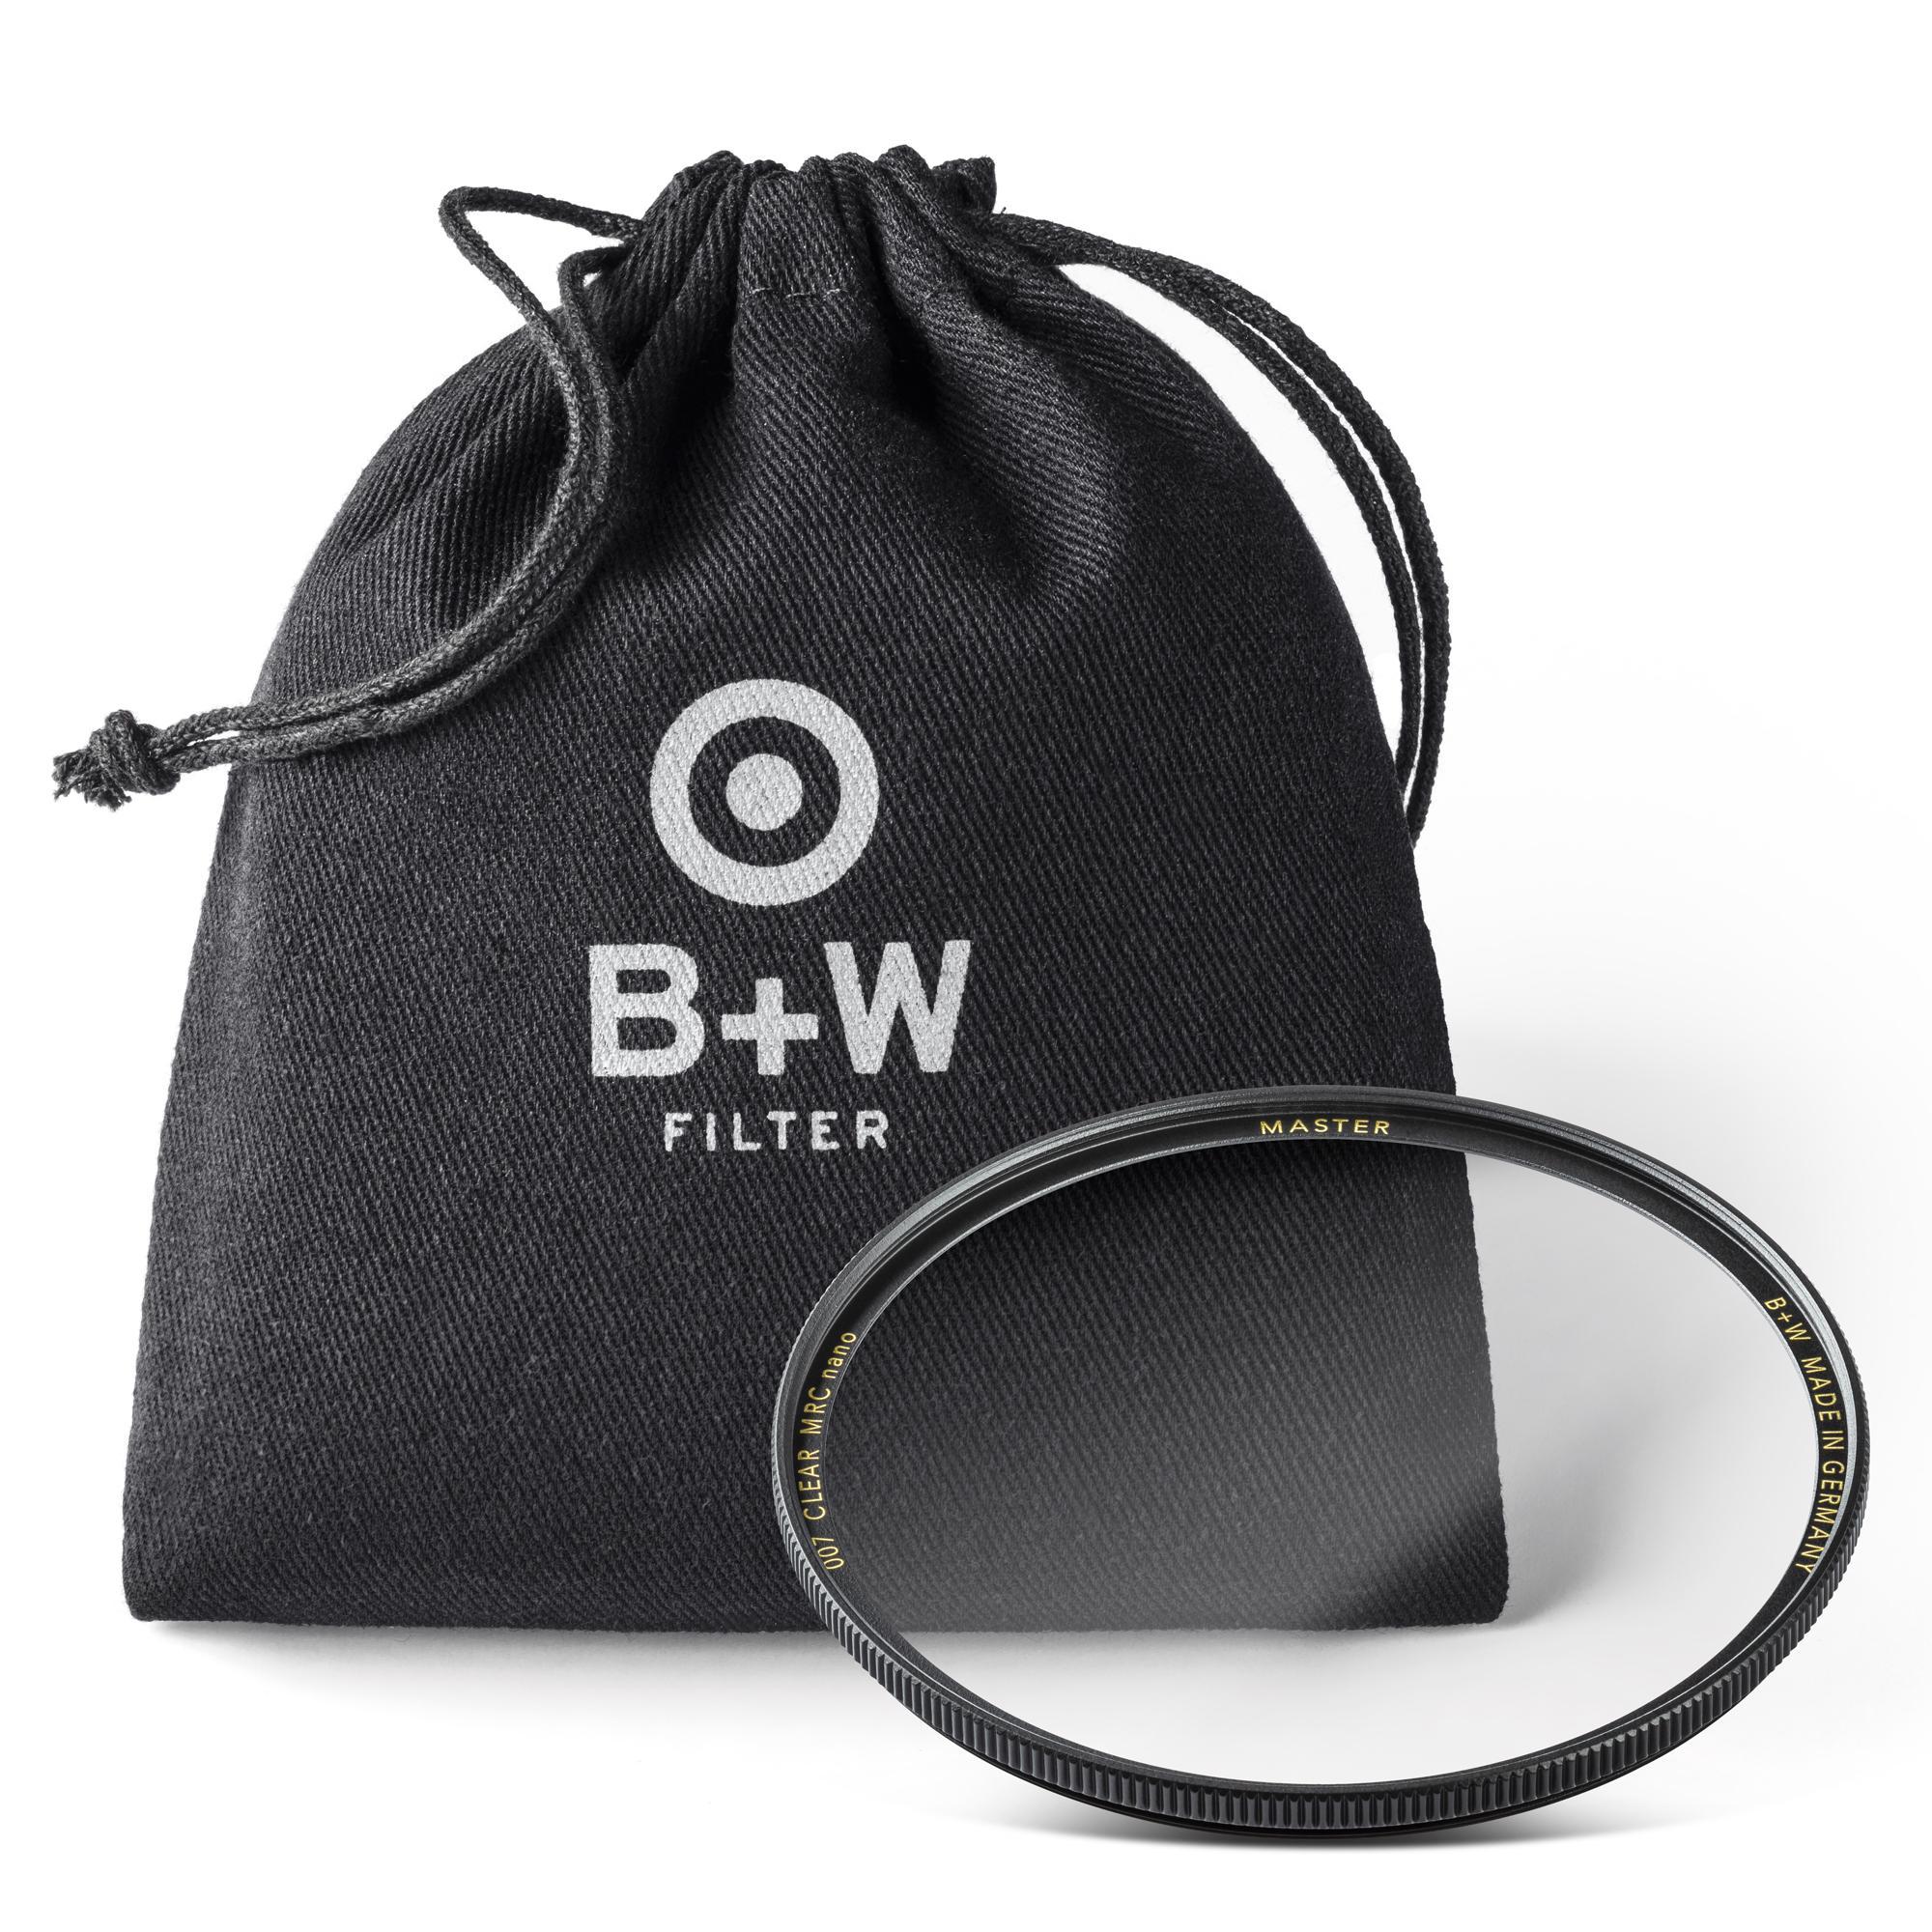 B+W Clear Filter 86 mm Nano Master